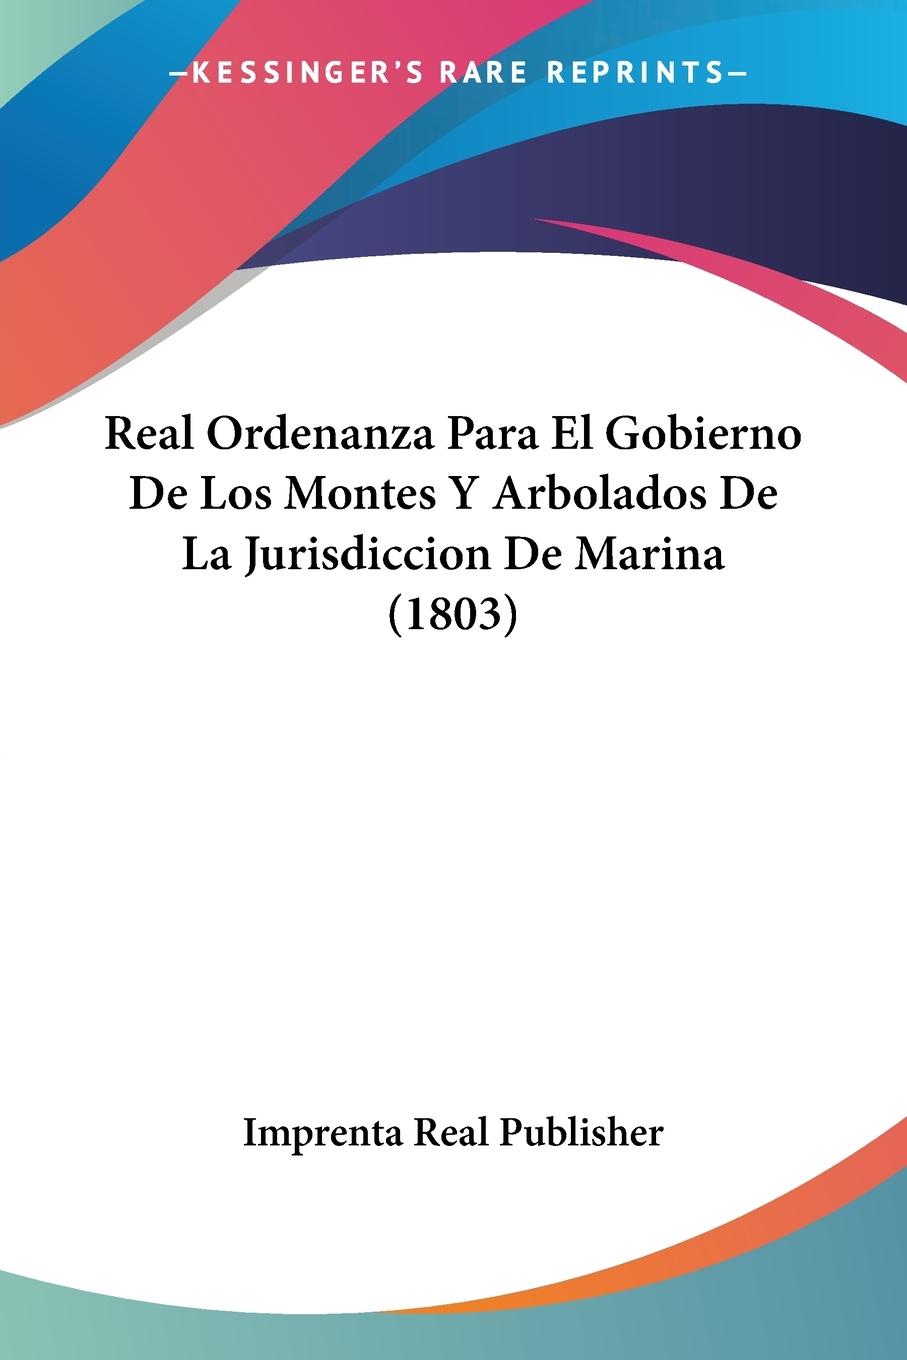 Real Ordenanza Para El Gobierno De Los Montes Y Arbolados De La Jurisdiccion De Marina (1803) - Imprenta Real Publisher